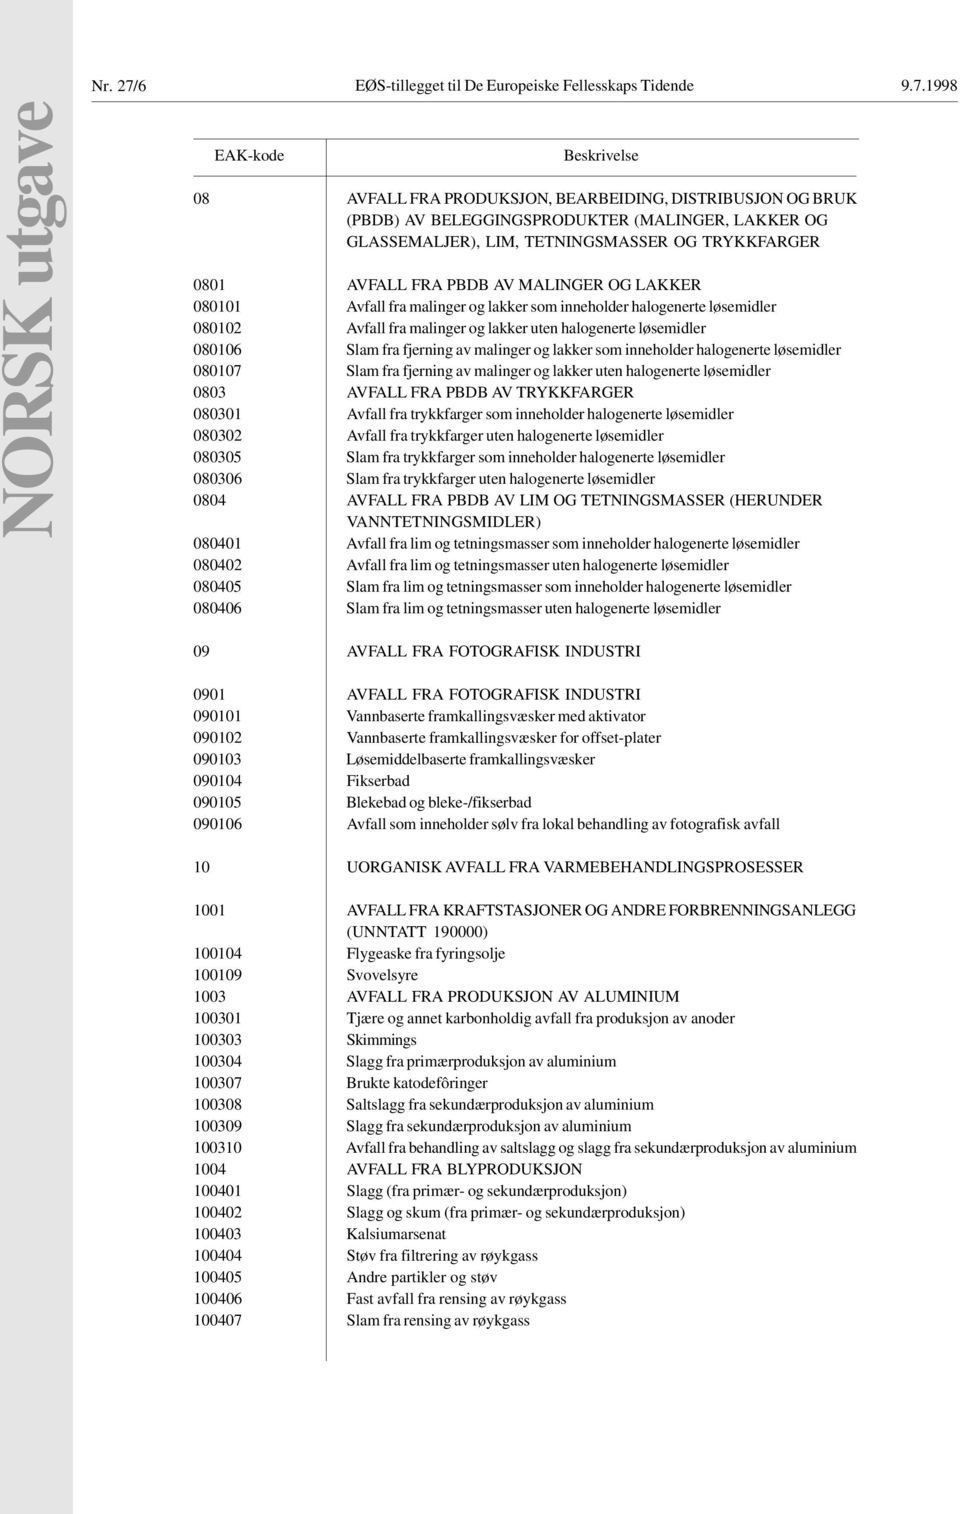 1998 NORSK utgave EAK-kode Beskrivelse 08 AVFALL FRA PRODUKSJON, BEARBEIDING, DISTRIBUSJON OG BRUK (PBDB) AV BELEGGINGSPRODUKTER (MALINGER, LAKKER OG GLASSEMALJER), LIM, TETNINGSMASSER OG TRYKKFARGER